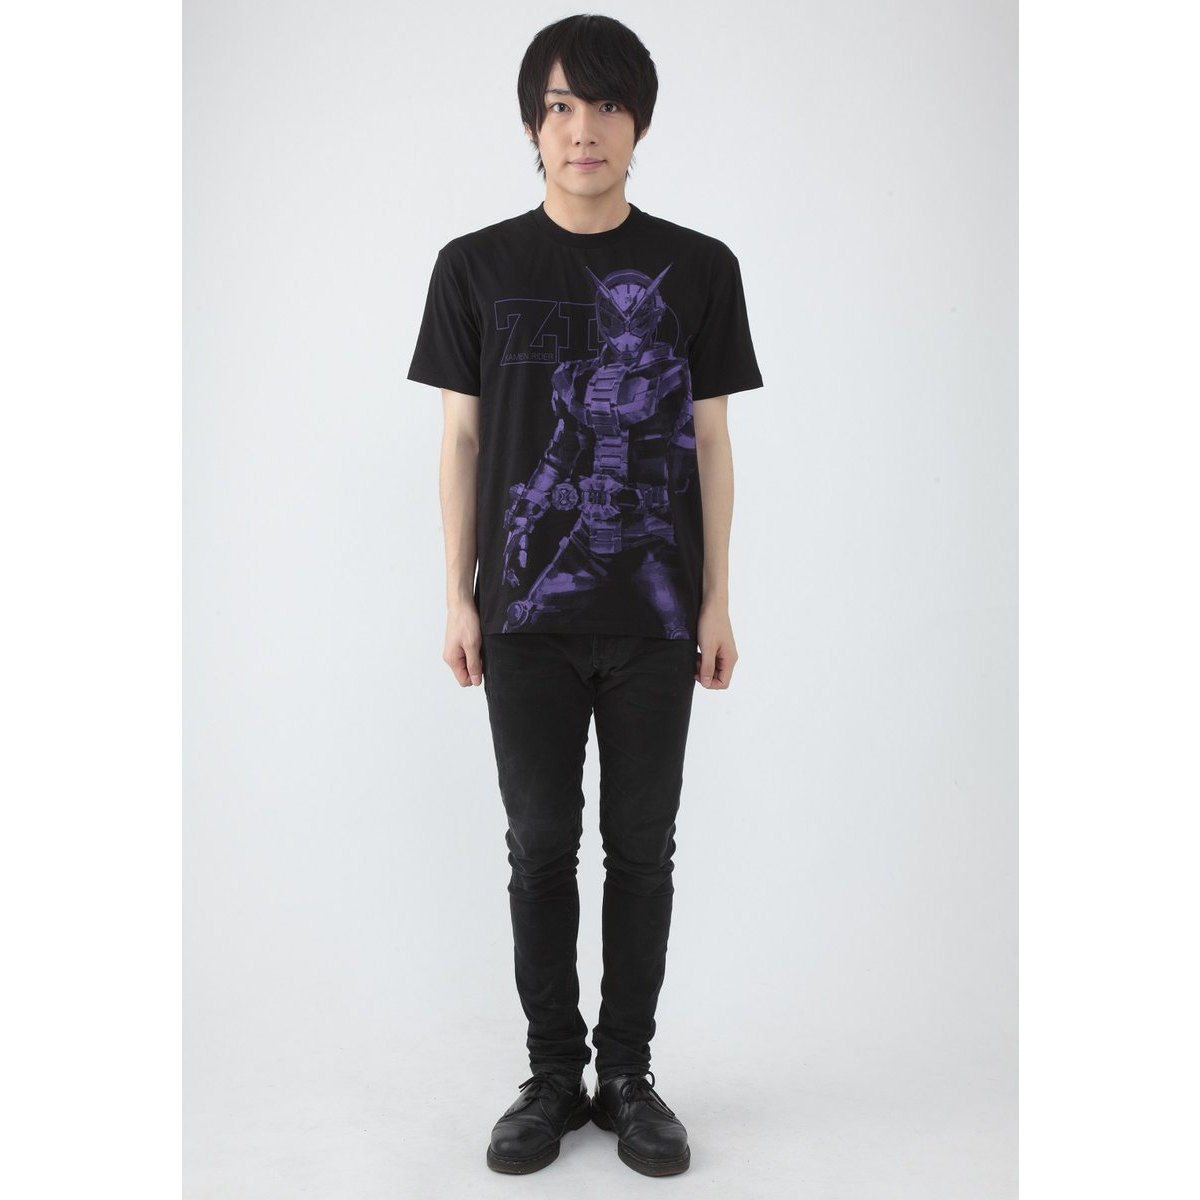 KAMEN RIDER ZI-O T-shirt (designed by YOSHIHITO SUGAWARA)